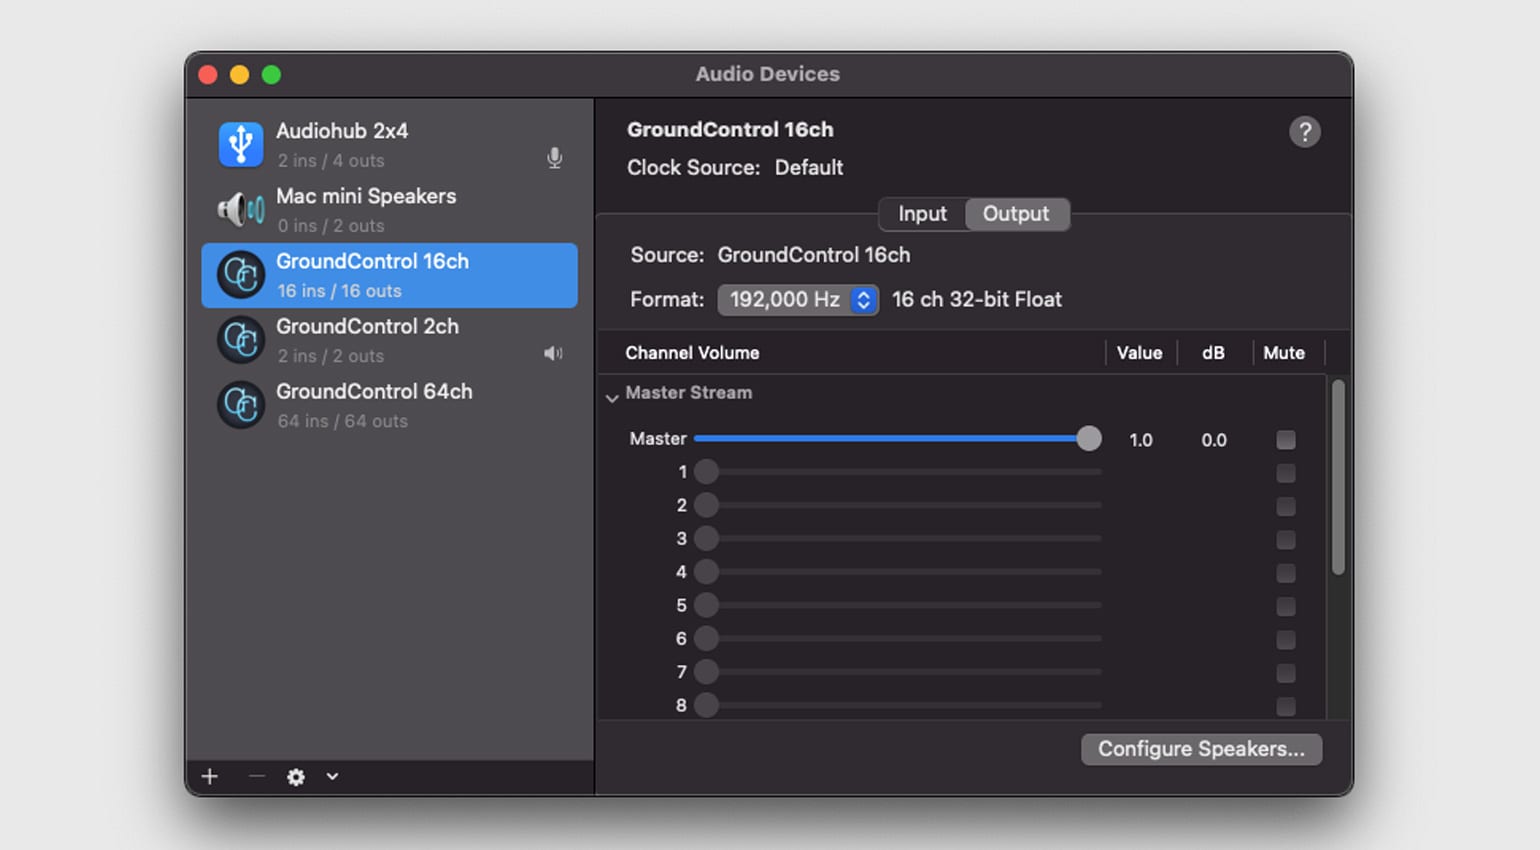 Ginger Audio Ground Control бесплатная запись экрана со звуком в macOS